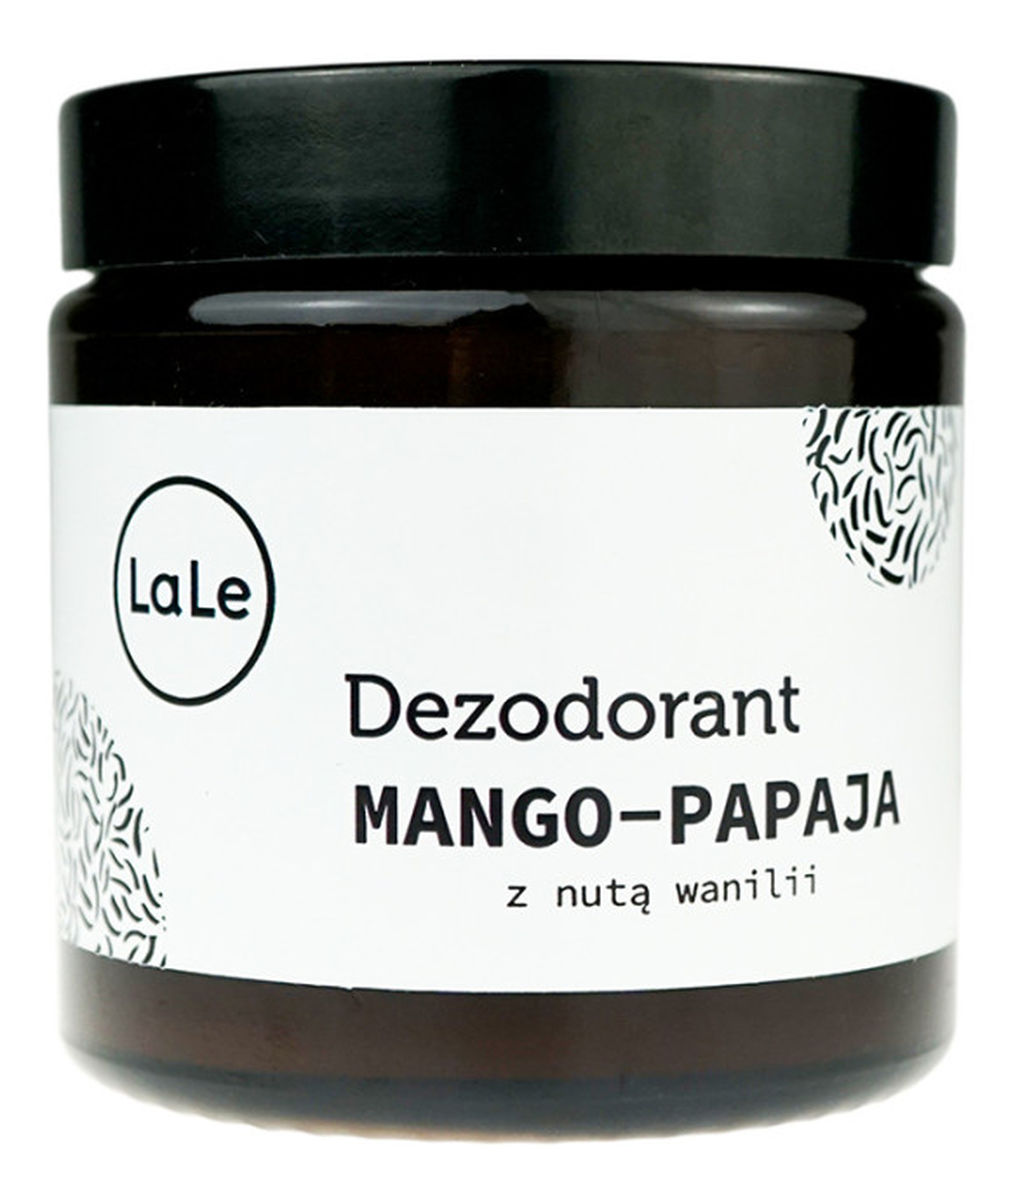 Dezodorant mango-papaya z nutą wanilii